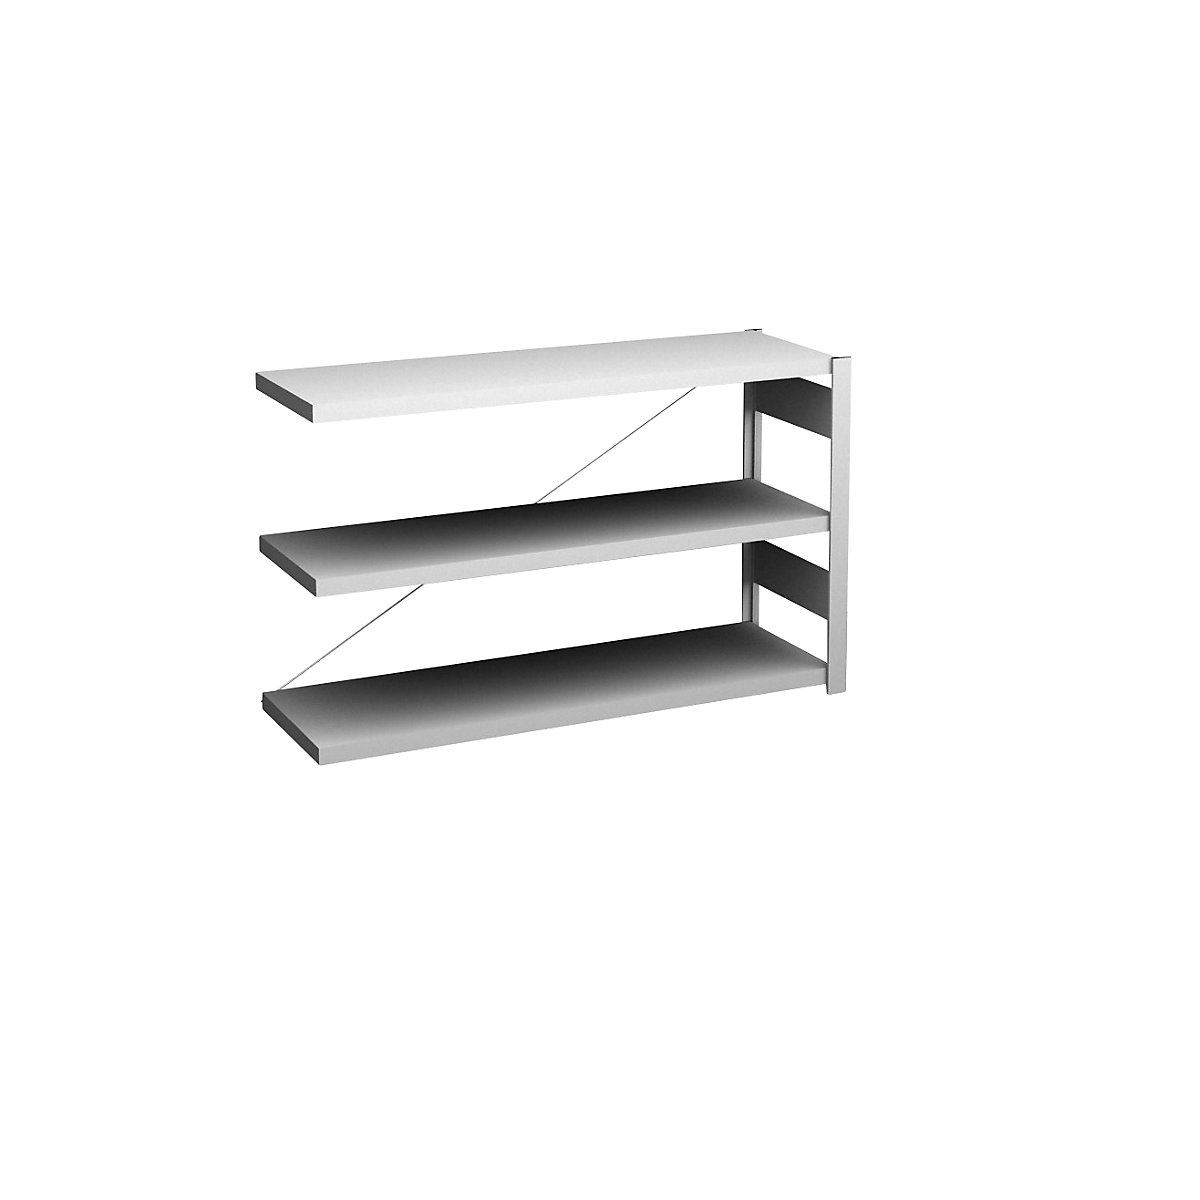 Sideboard shelving unit, light grey – hofe, height 825 mm, 3 shelves, extension shelf unit, shelf depth 400 mm, max. shelf load 180 kg-3